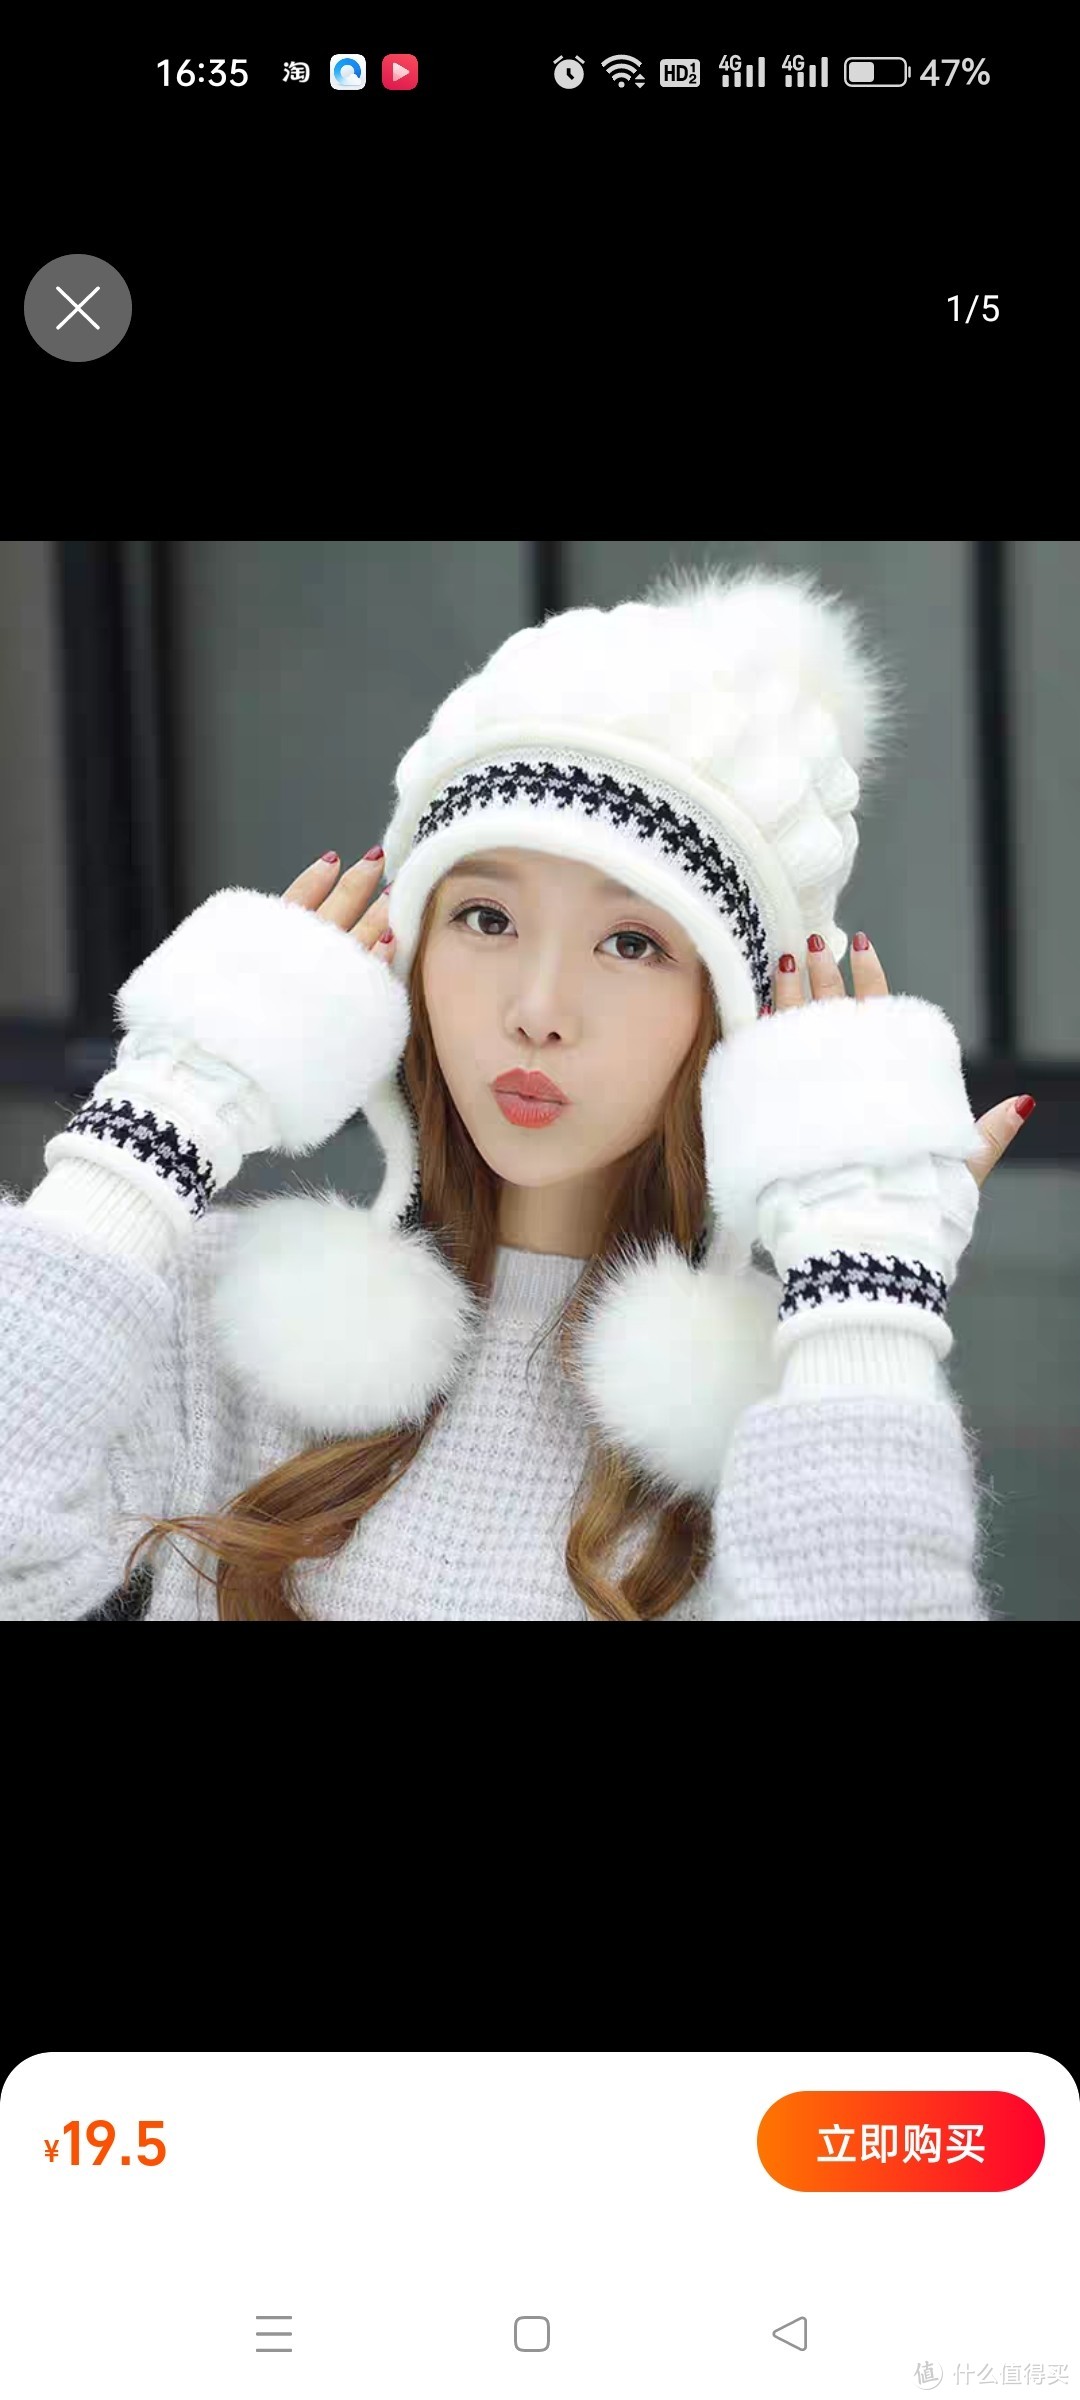 白色针织帽子女冬天保暖秋冬手套新款时尚冬季护耳加绒加厚毛线帽